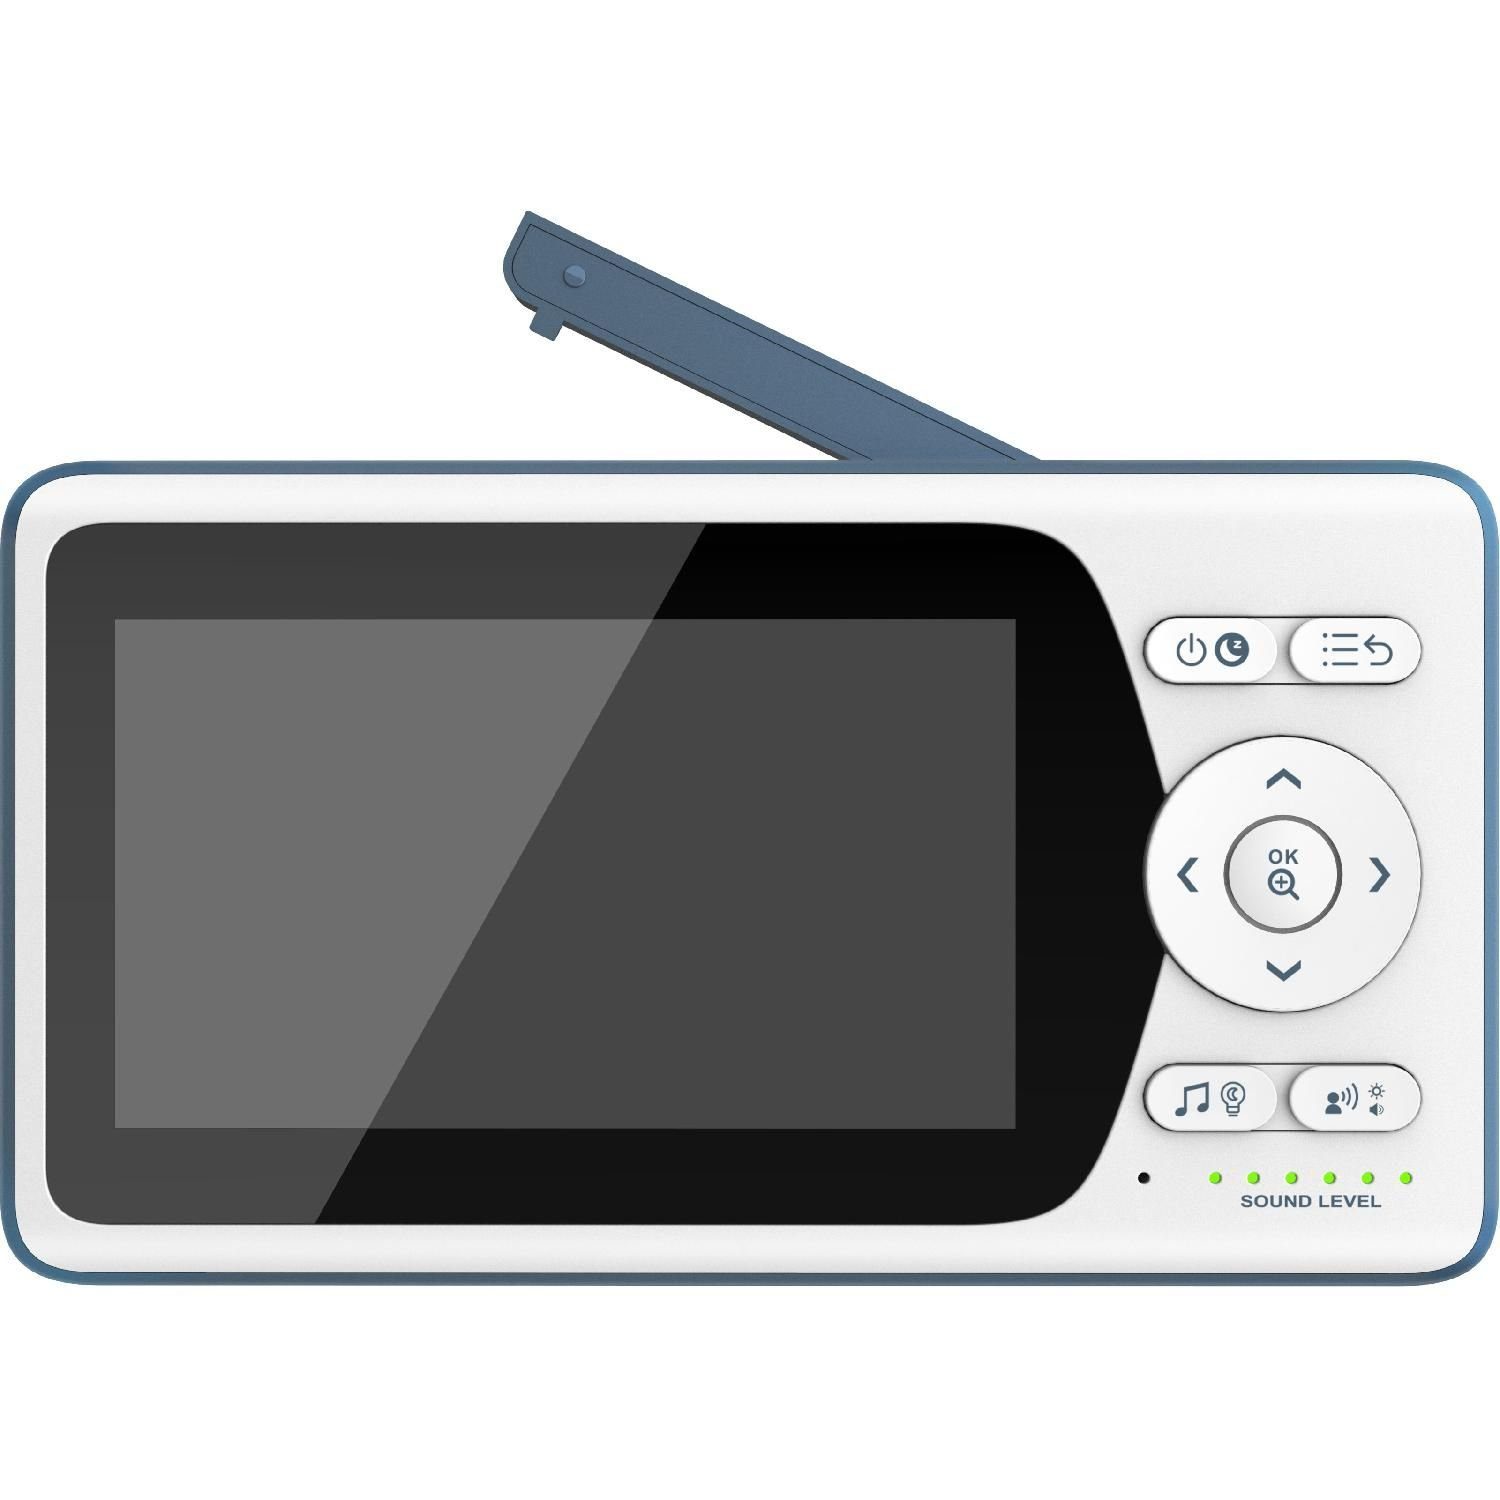 Telefunken Video-Babyphone VM-M500 Video-Babyphone 640x480px 4.3'' Infrarotmodus Display